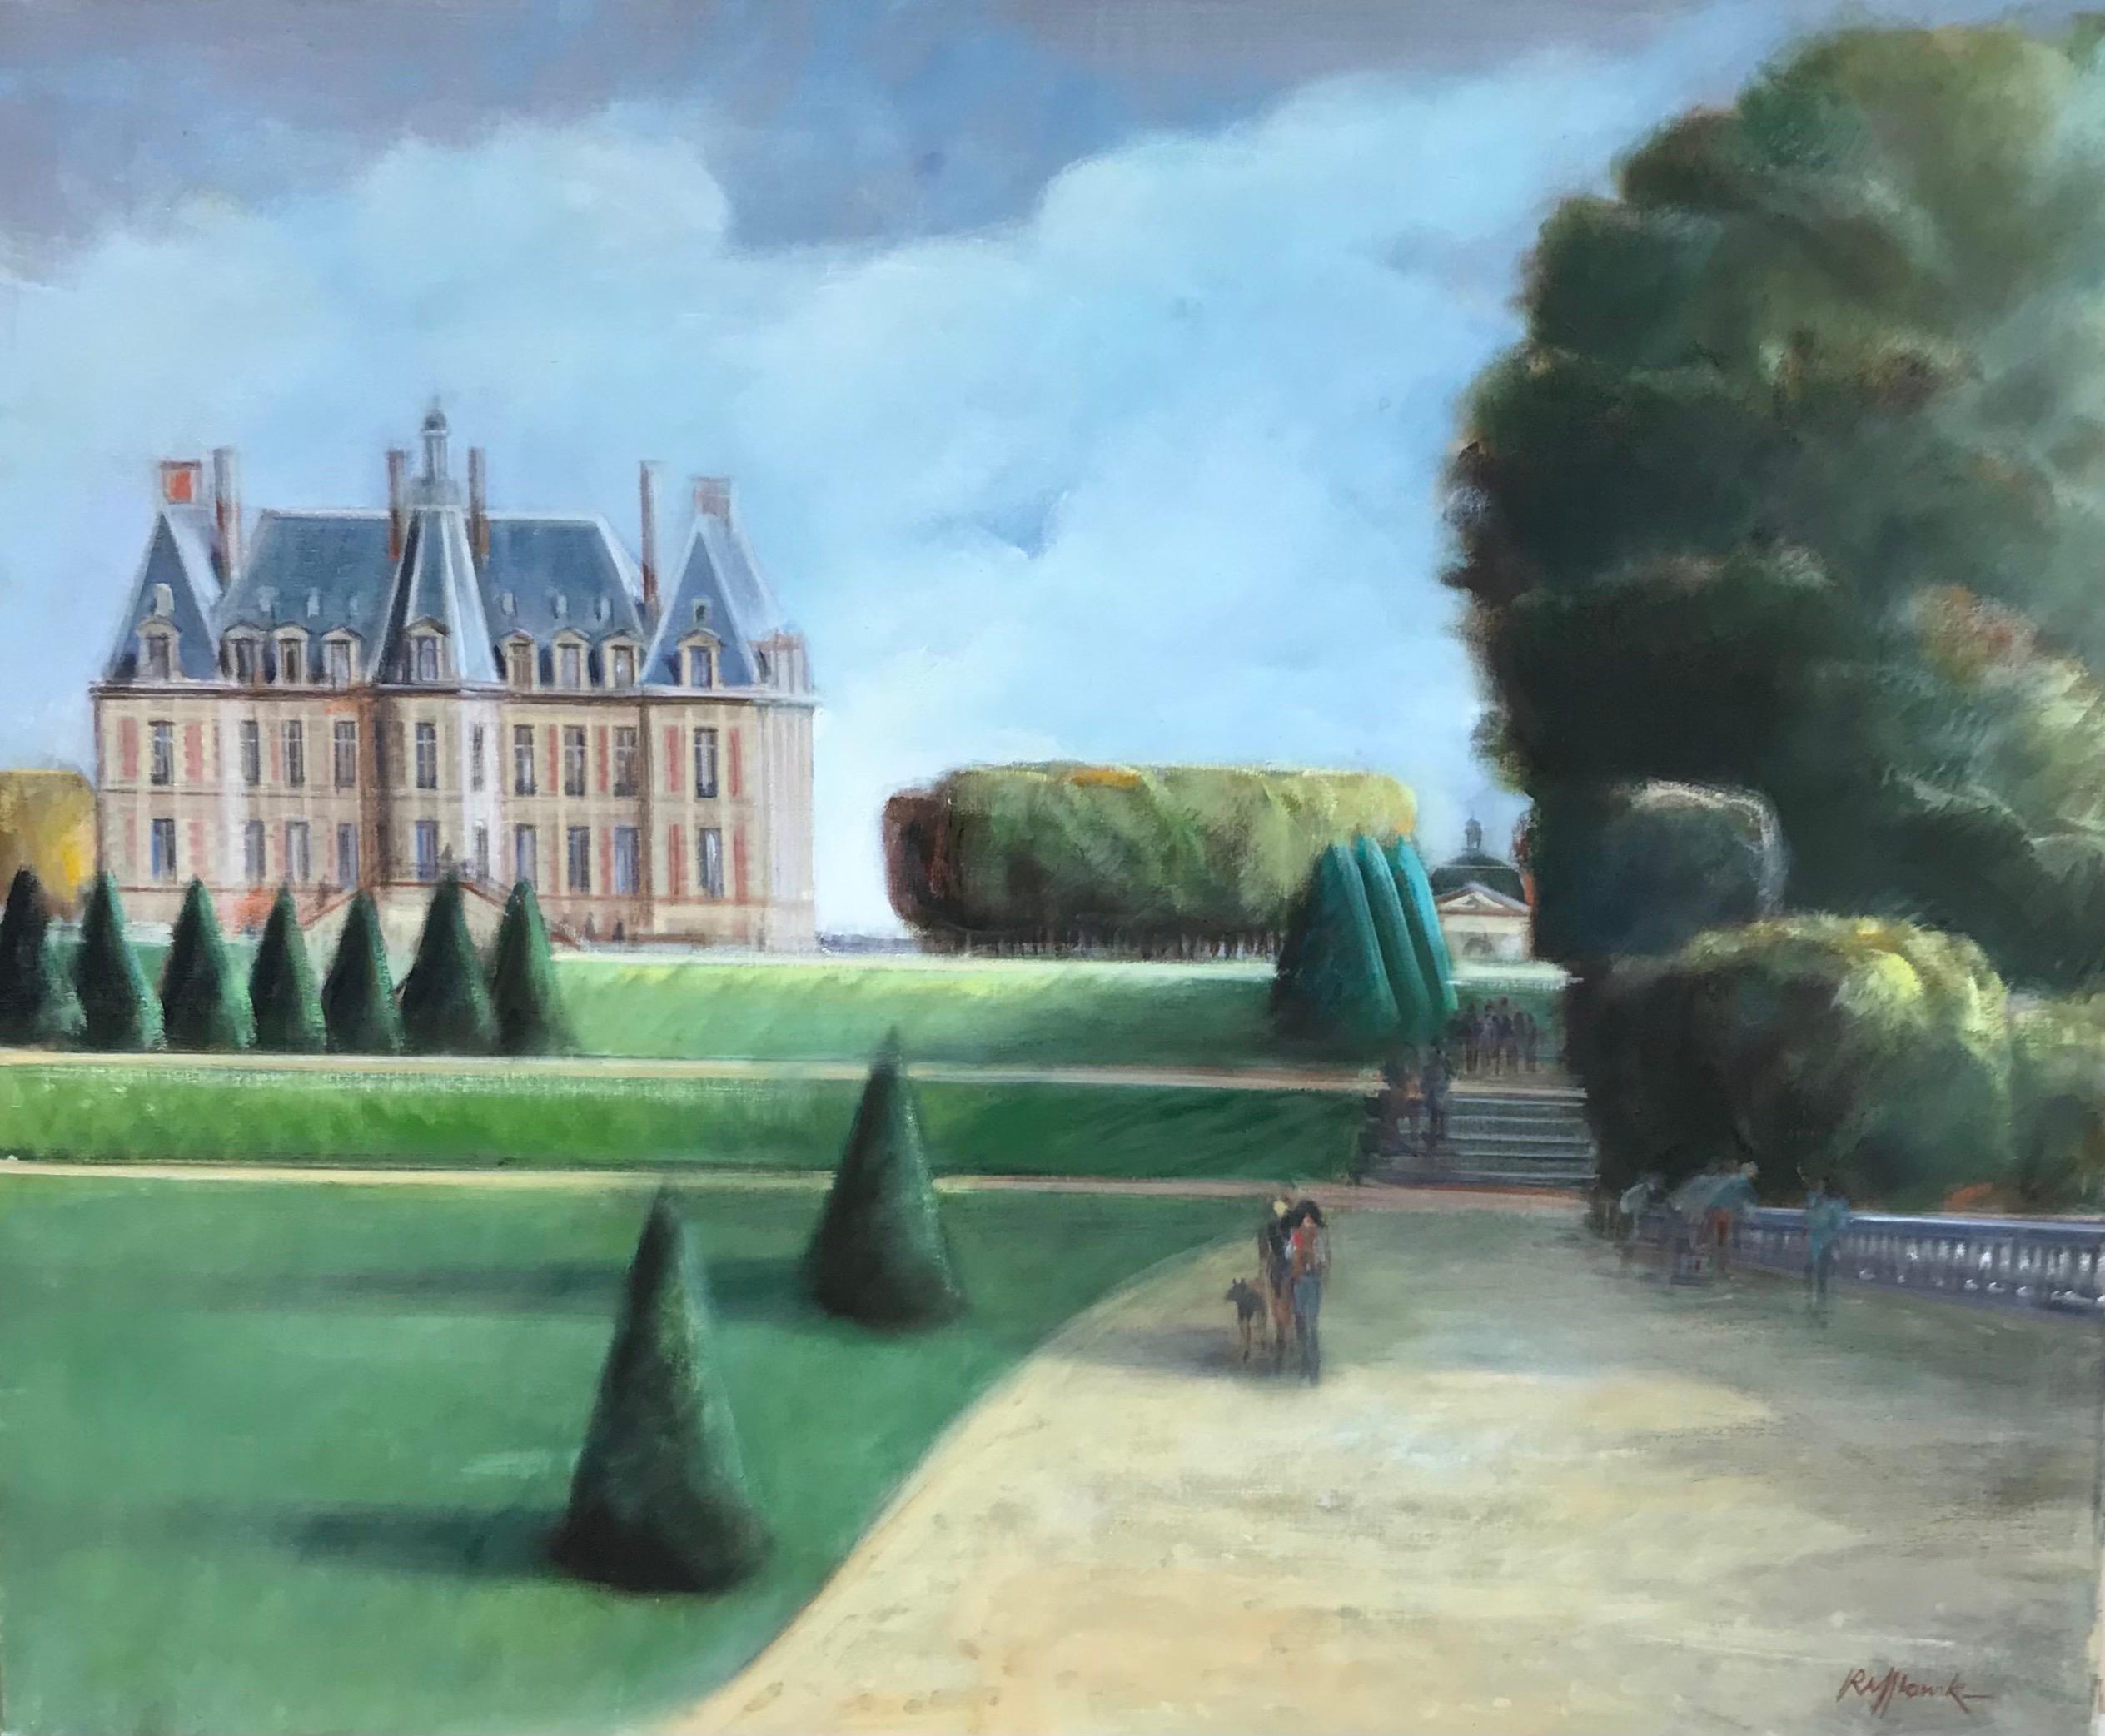 Landscape Painting French School - Chateau de Sceaux dans un parc, belle peinture à l'huile originale impressionniste française